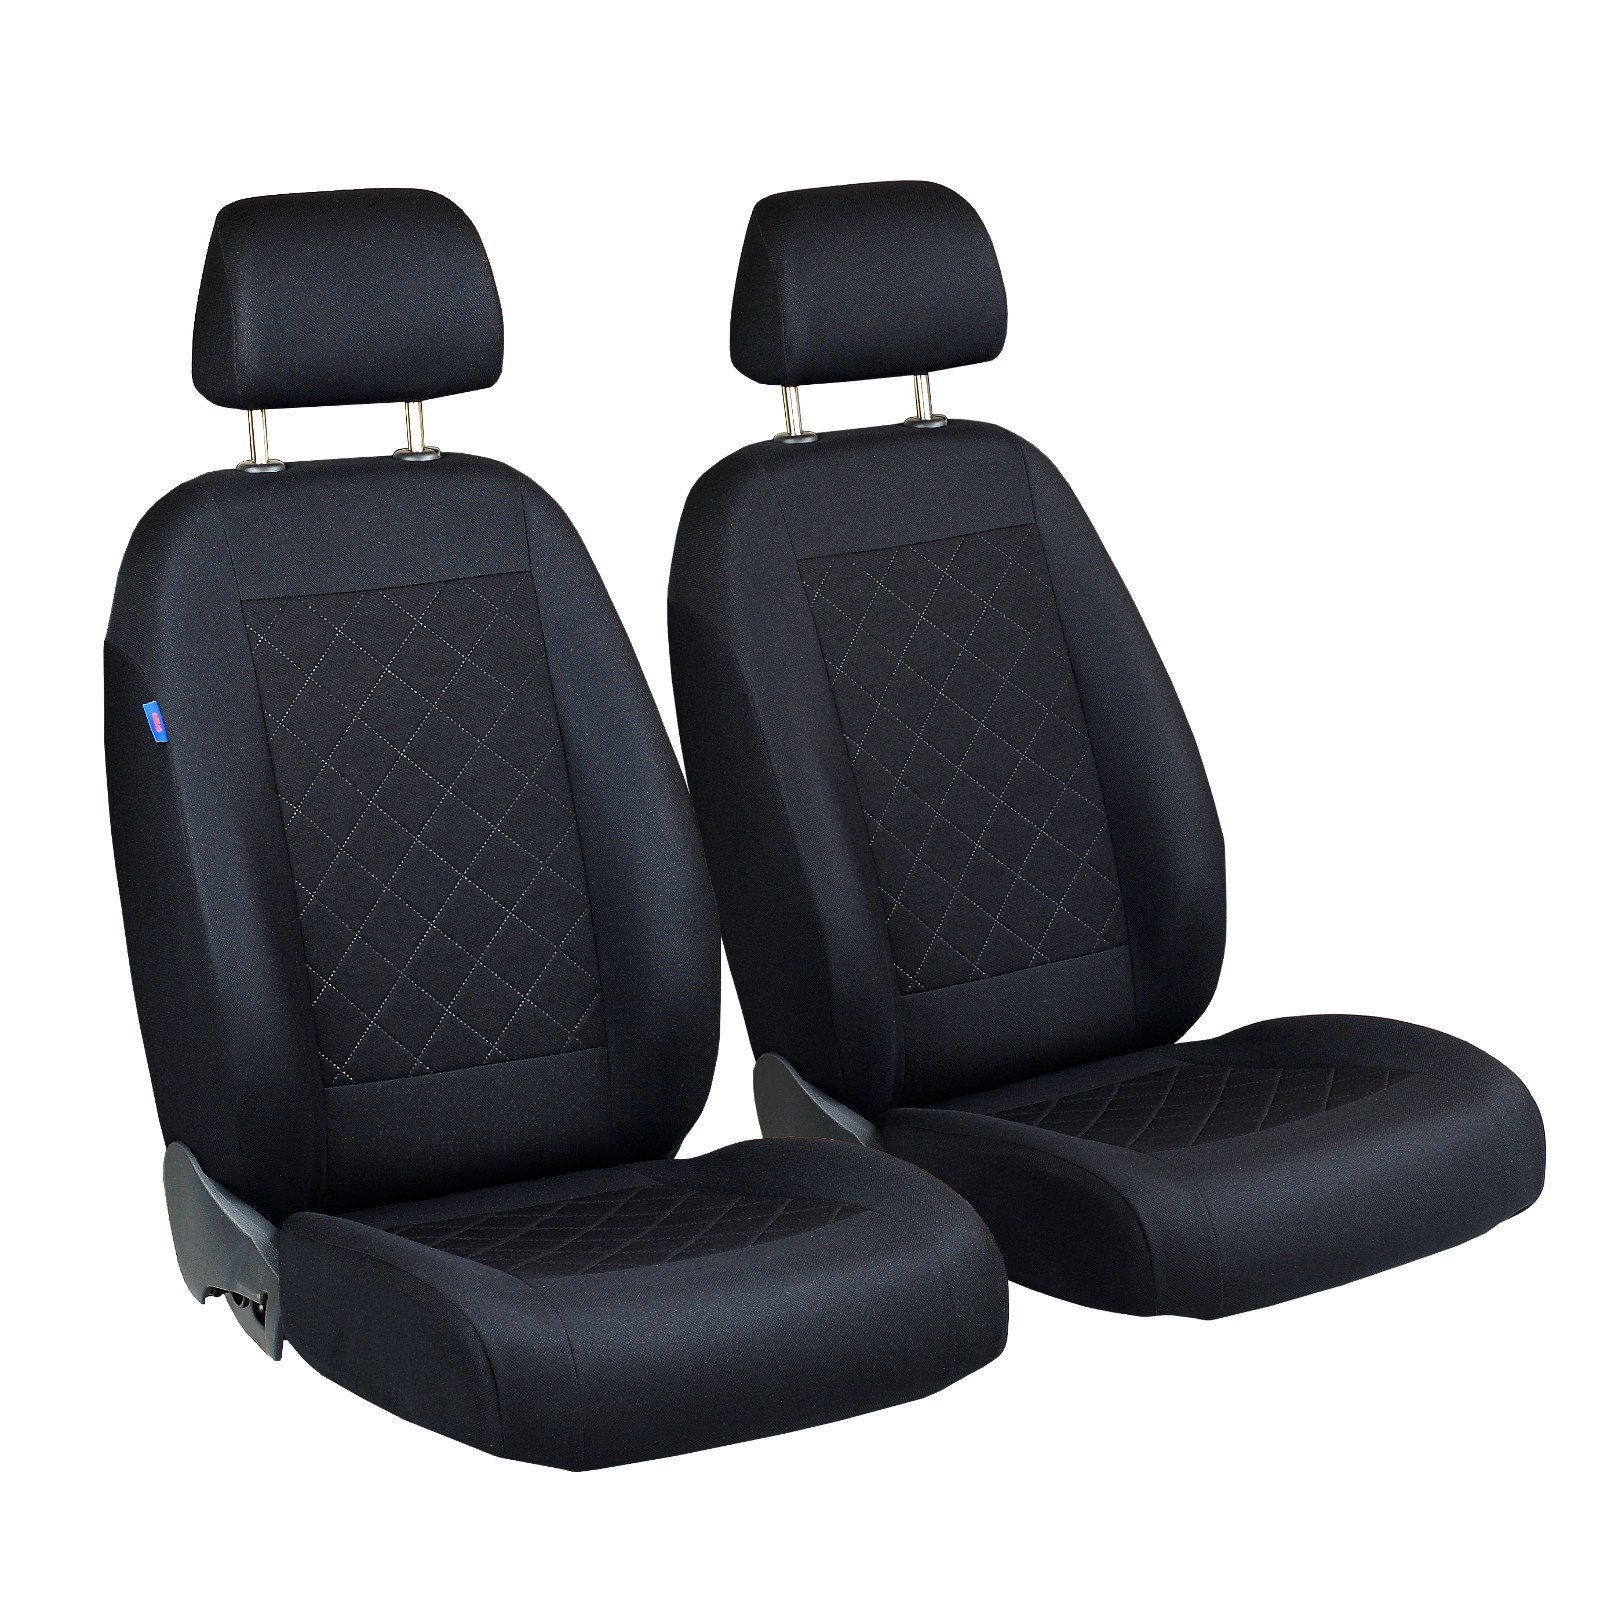 Courier Vorne Sitzbezüge - für Fahrer und Beifahrer - Farbe Premium Schwarz gepresstes Karomuster